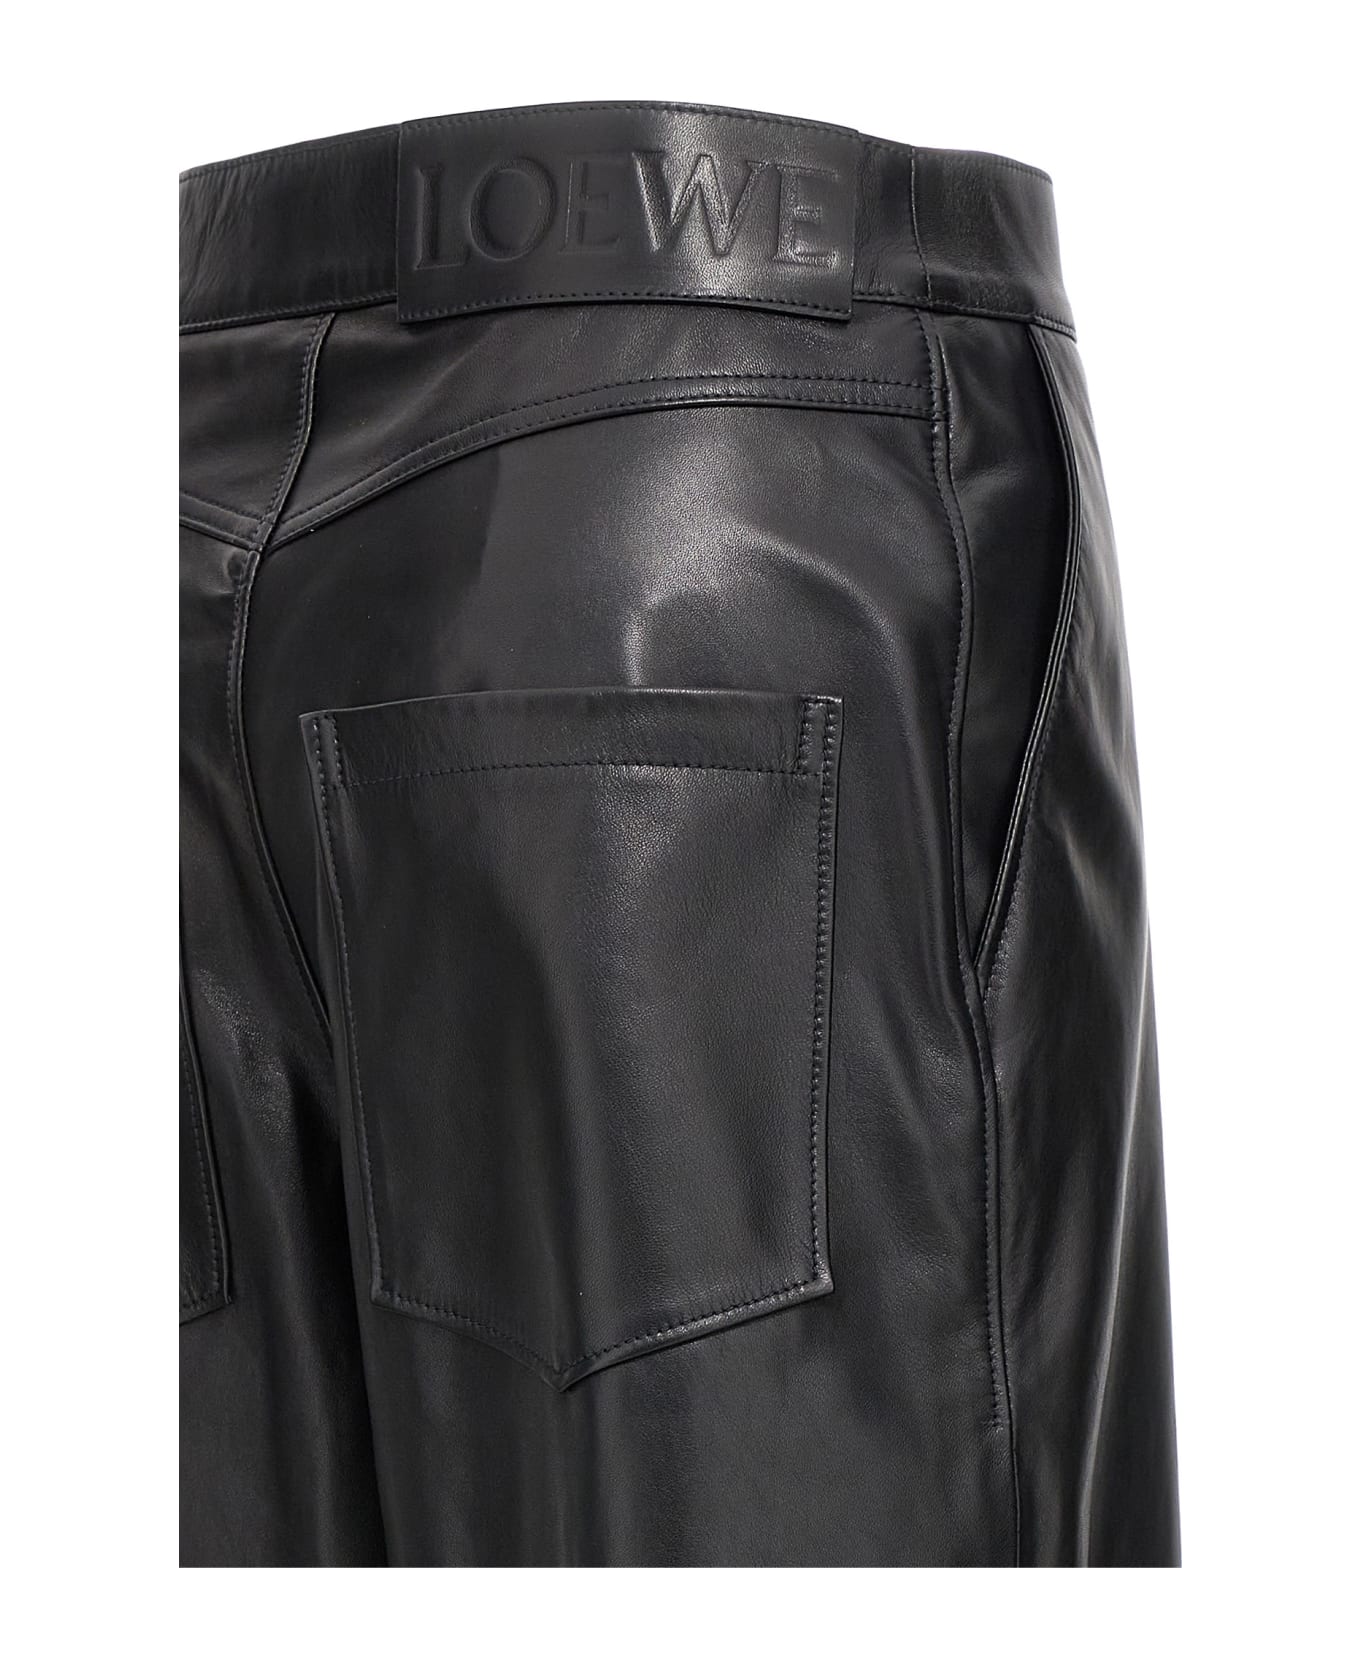 Loewe 'anagram' Baggy Trousers - Black   ボトムス